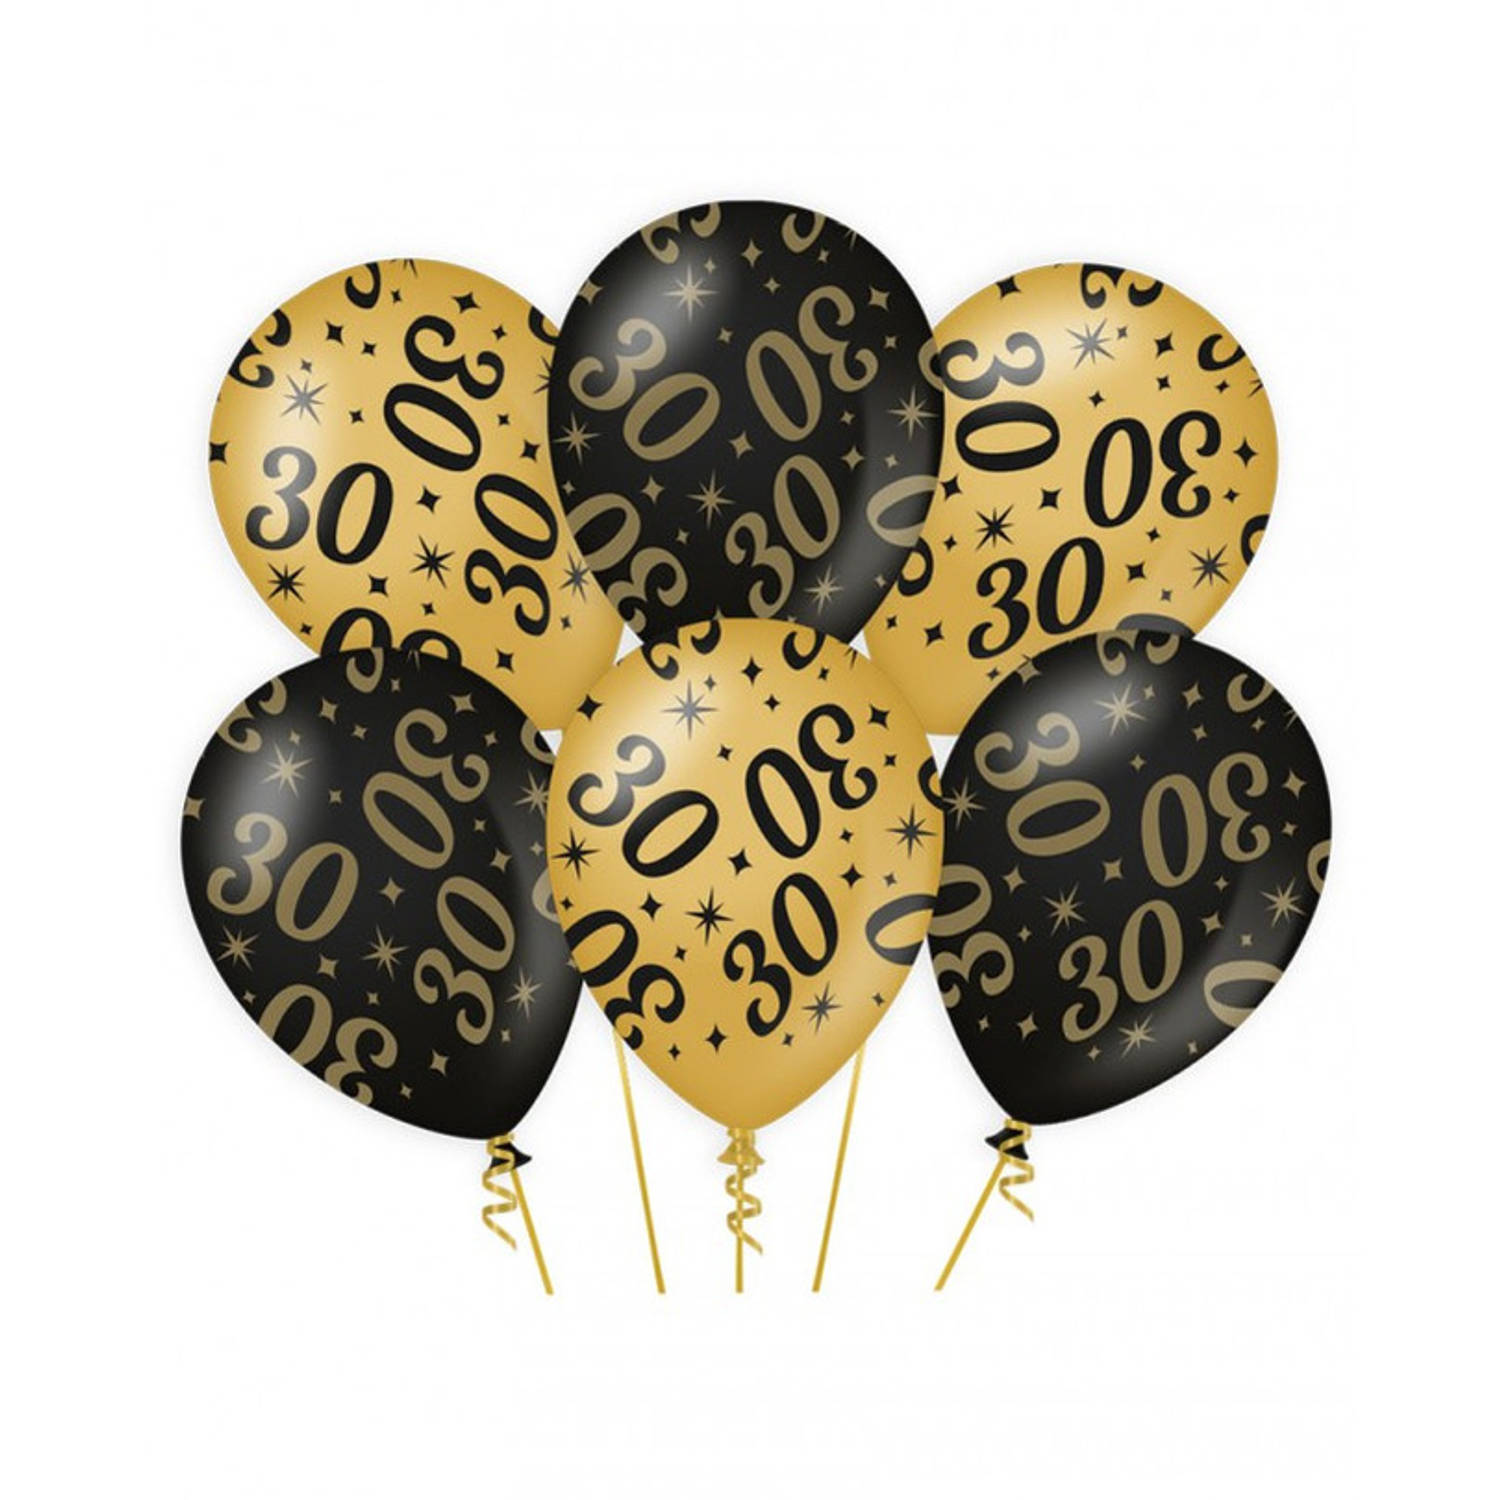 6x stuks leeftijd verjaardag feest ballonnen 30 jaar geworden zwart/goud 30 cm - Ballonnen